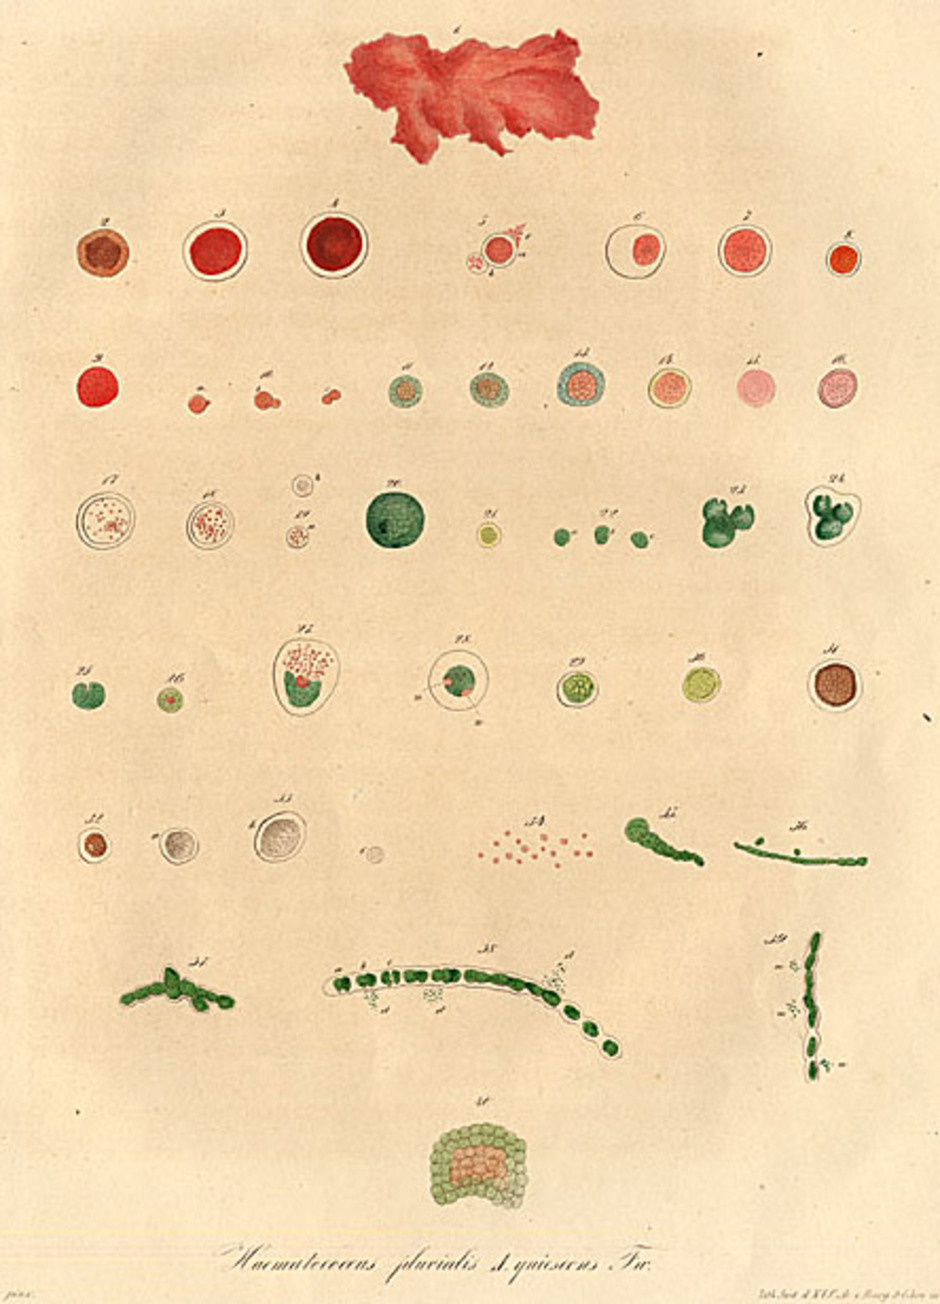 Illustrationer ur boken "Über Haematococcus pluvialis" över algens mångtaliga livsformer, enligt Julius von Flotow.